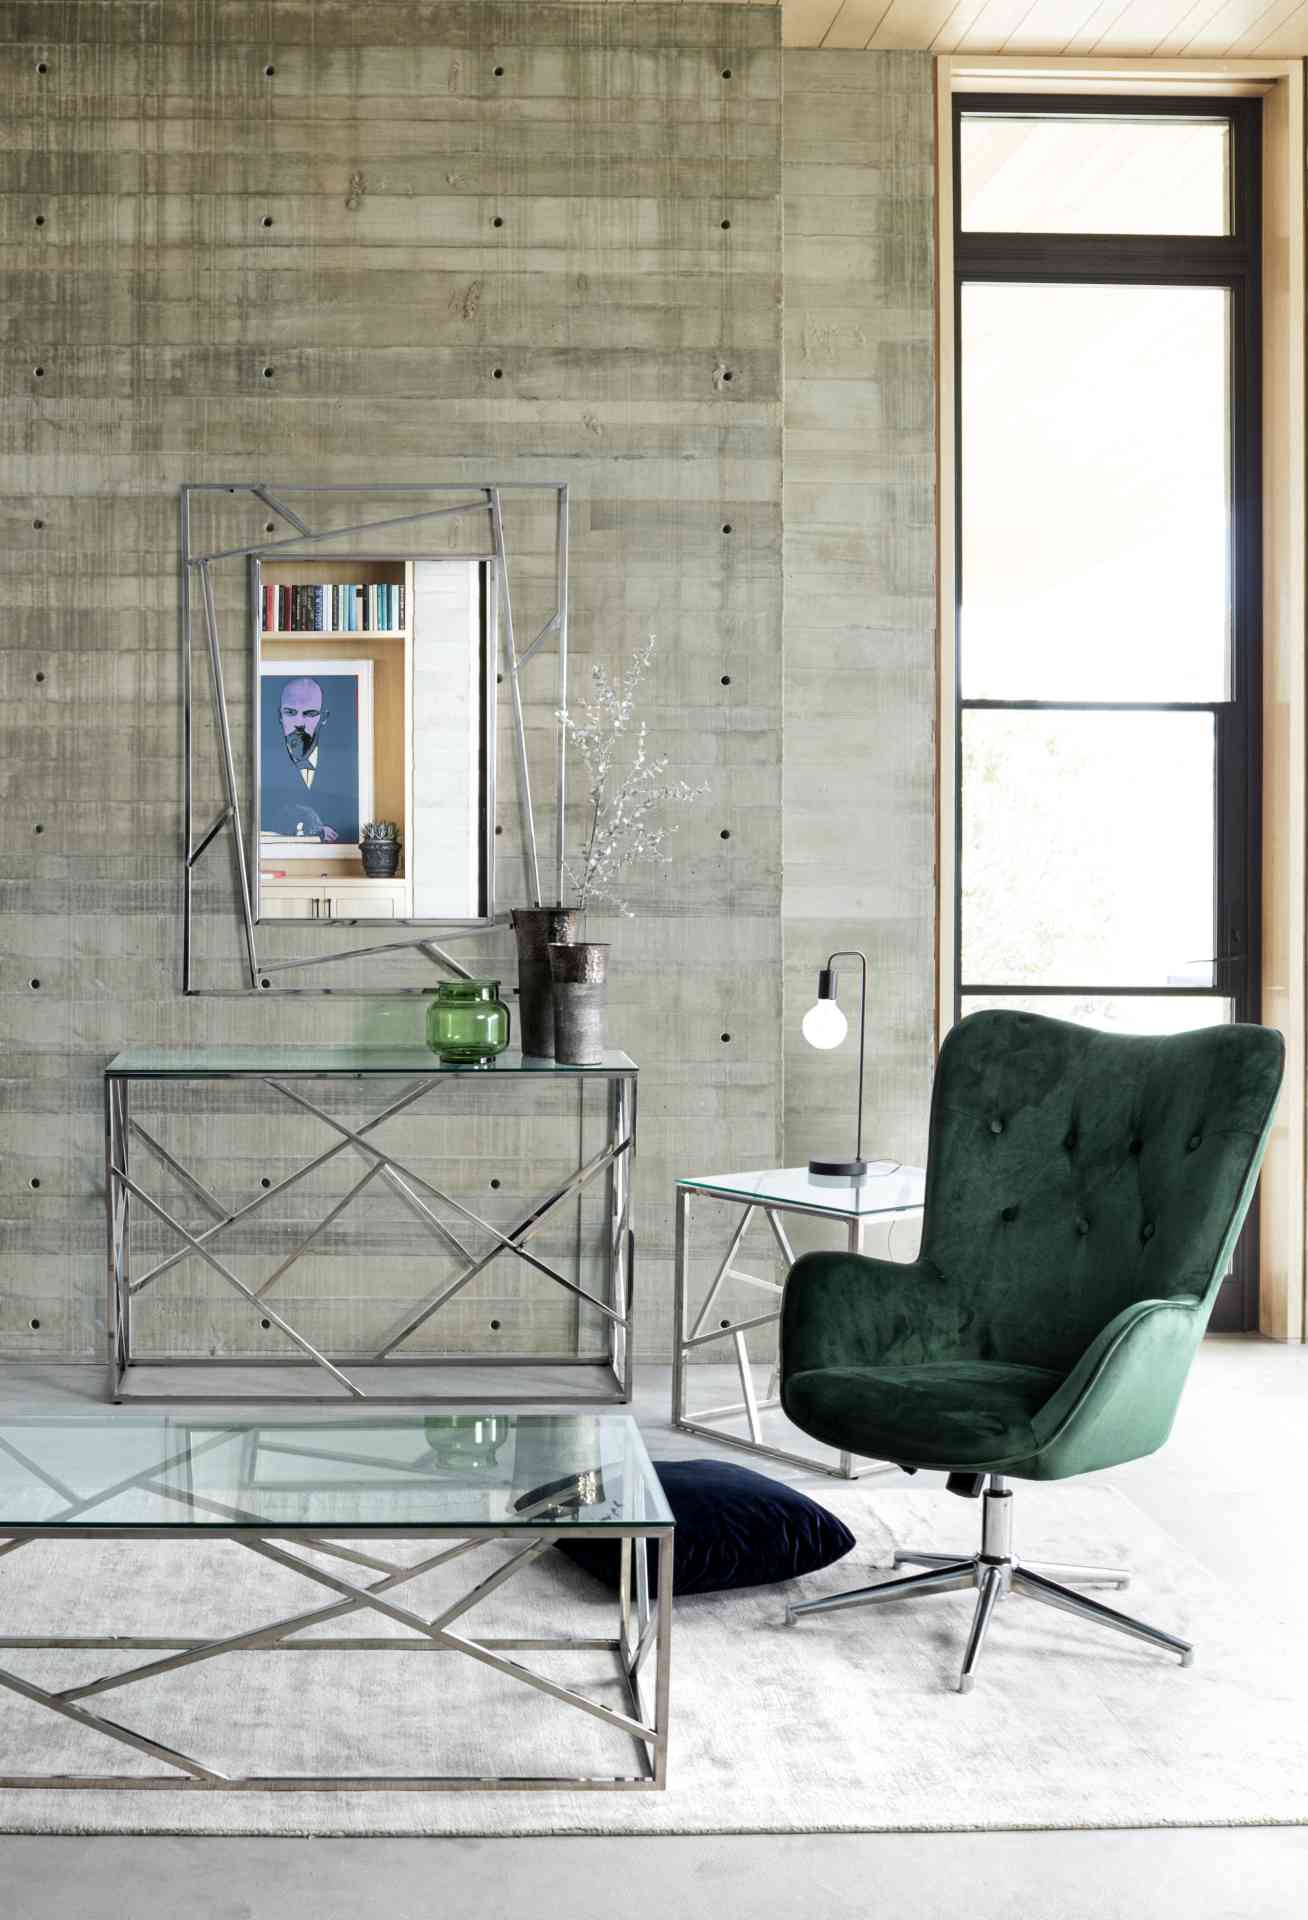 Der Sessel Farida überzeugt mit seinem modernen Design. Gefertigt wurde er aus Samt, welcher einen grünen Farbton besitzt. Das Gestell ist aus Metall und hat eine silberne Farbe. Der Sessel besitzt eine Sitzhöhe von 45 cm. Die Breite beträgt 69 cm. Der Se